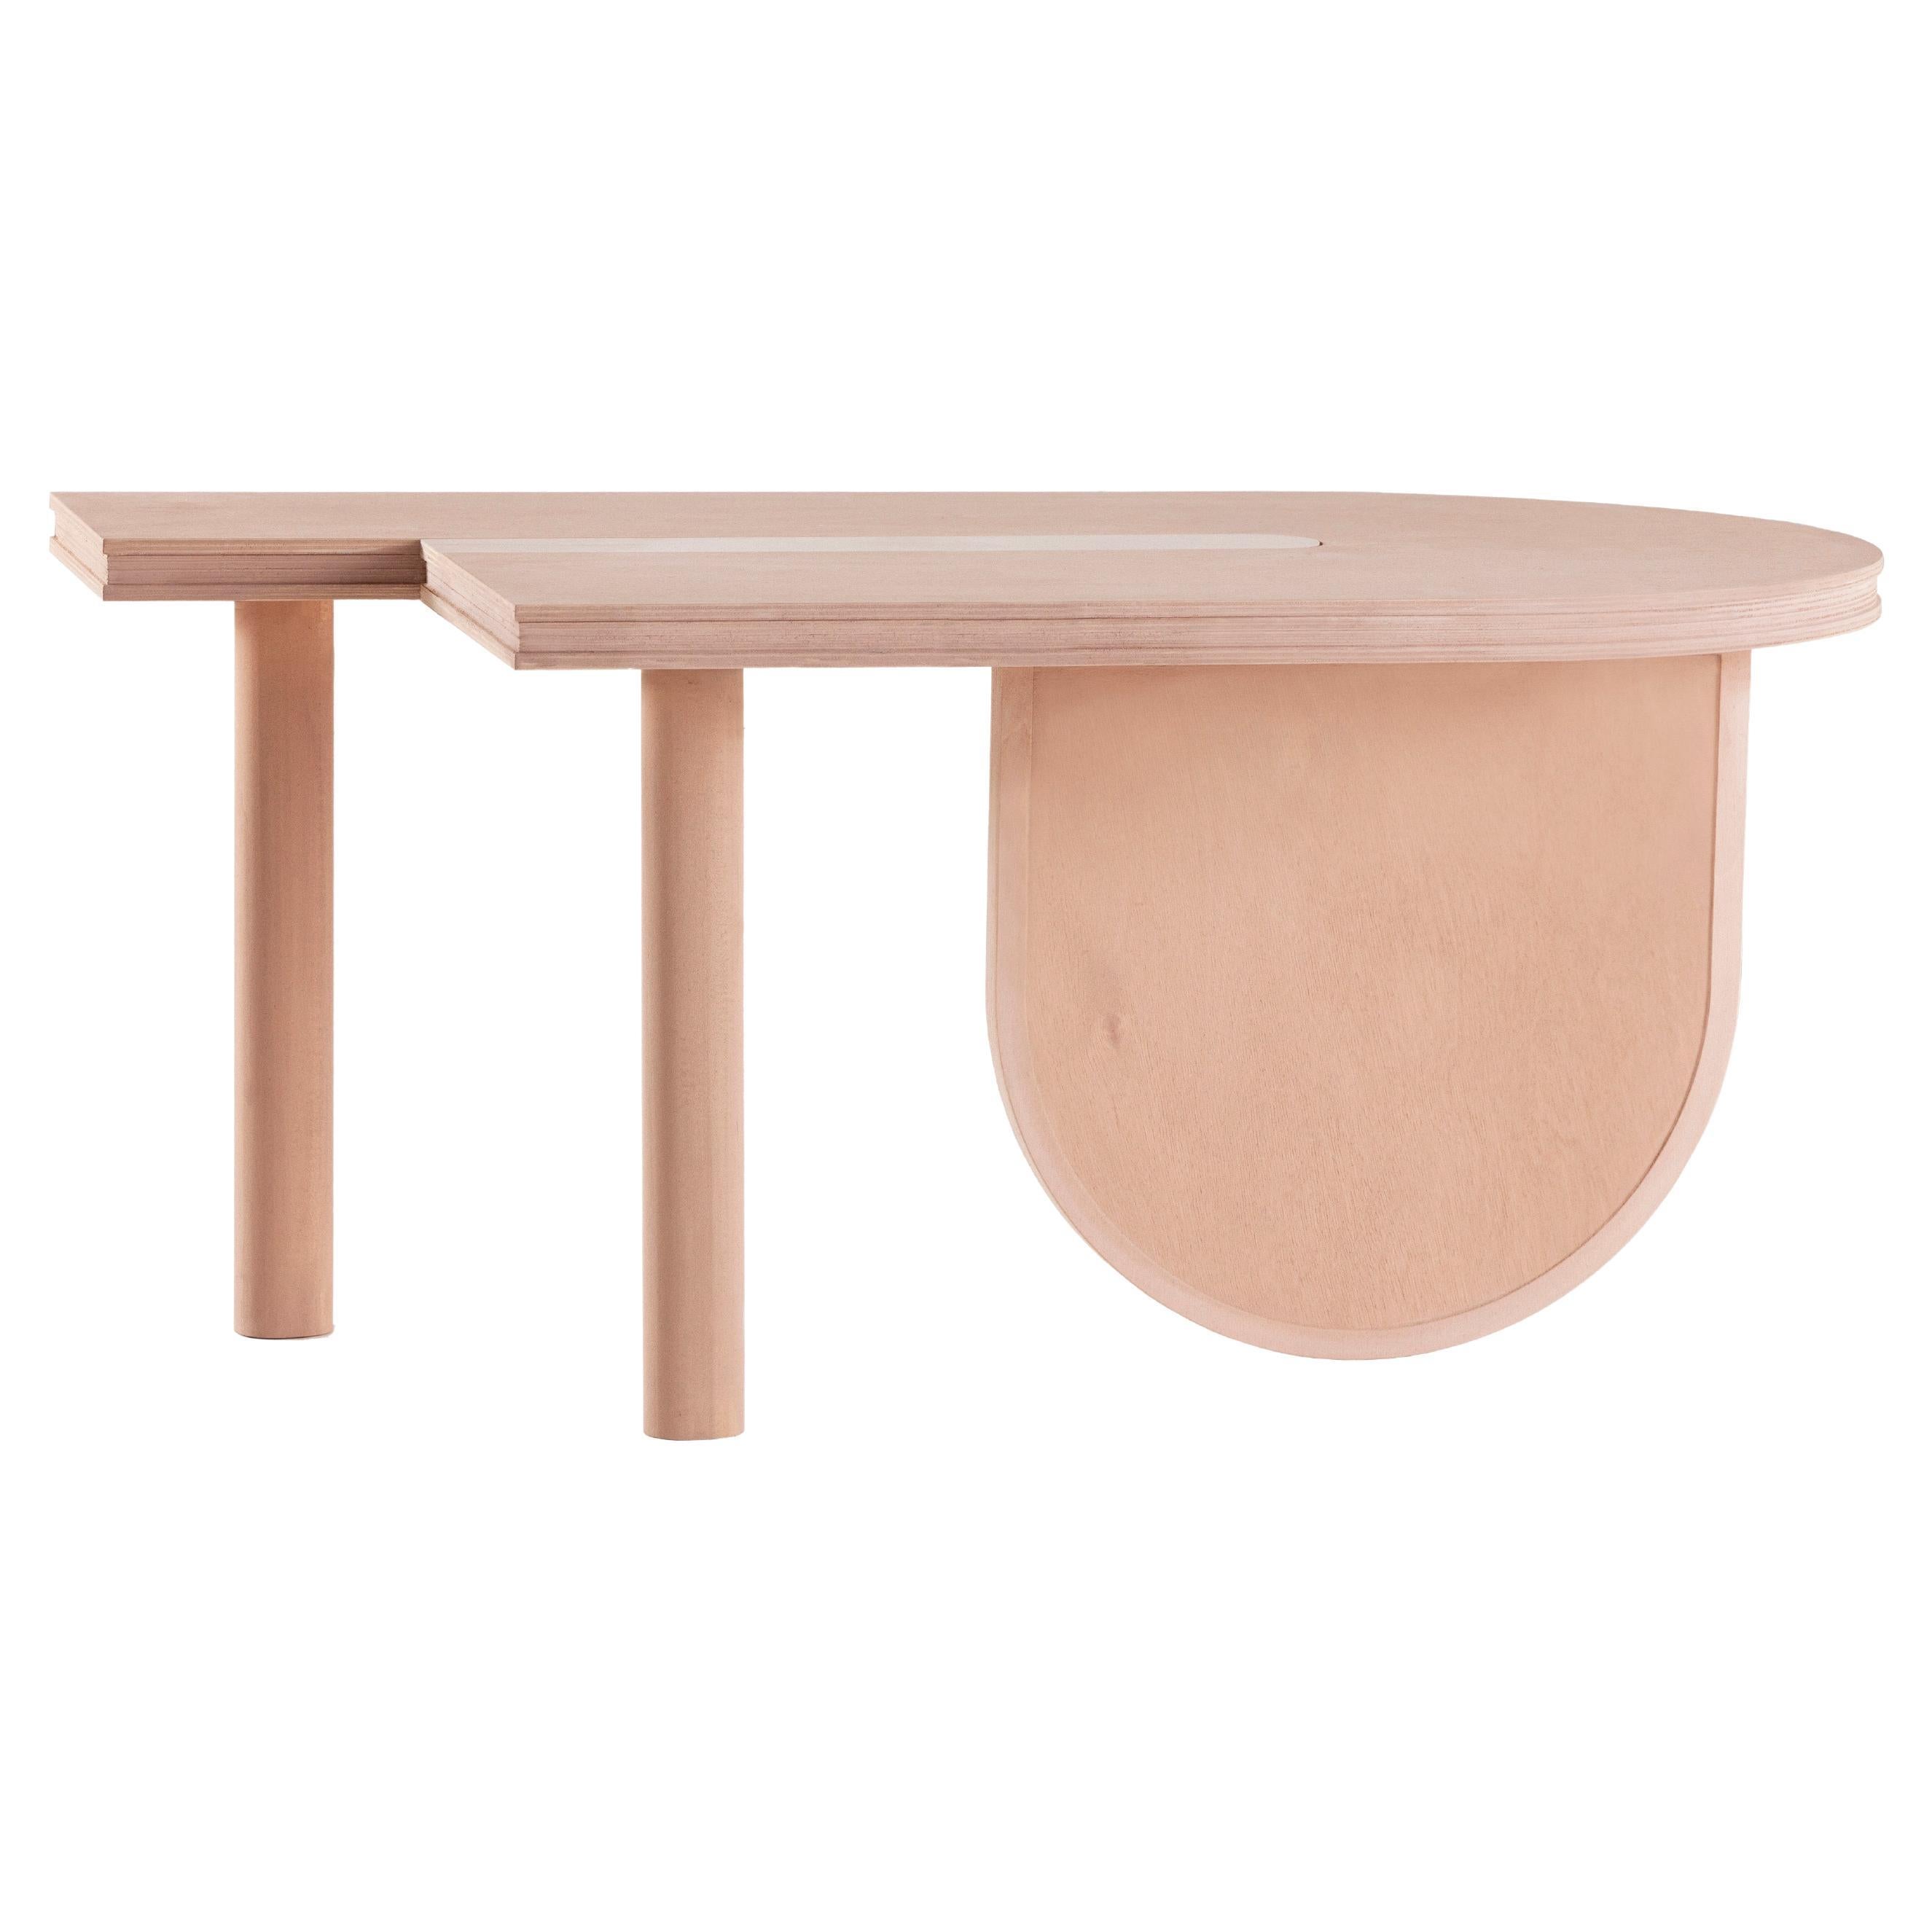 Table basse minimaliste contemporaine Sourire en édition limitée en bois, couleur sable